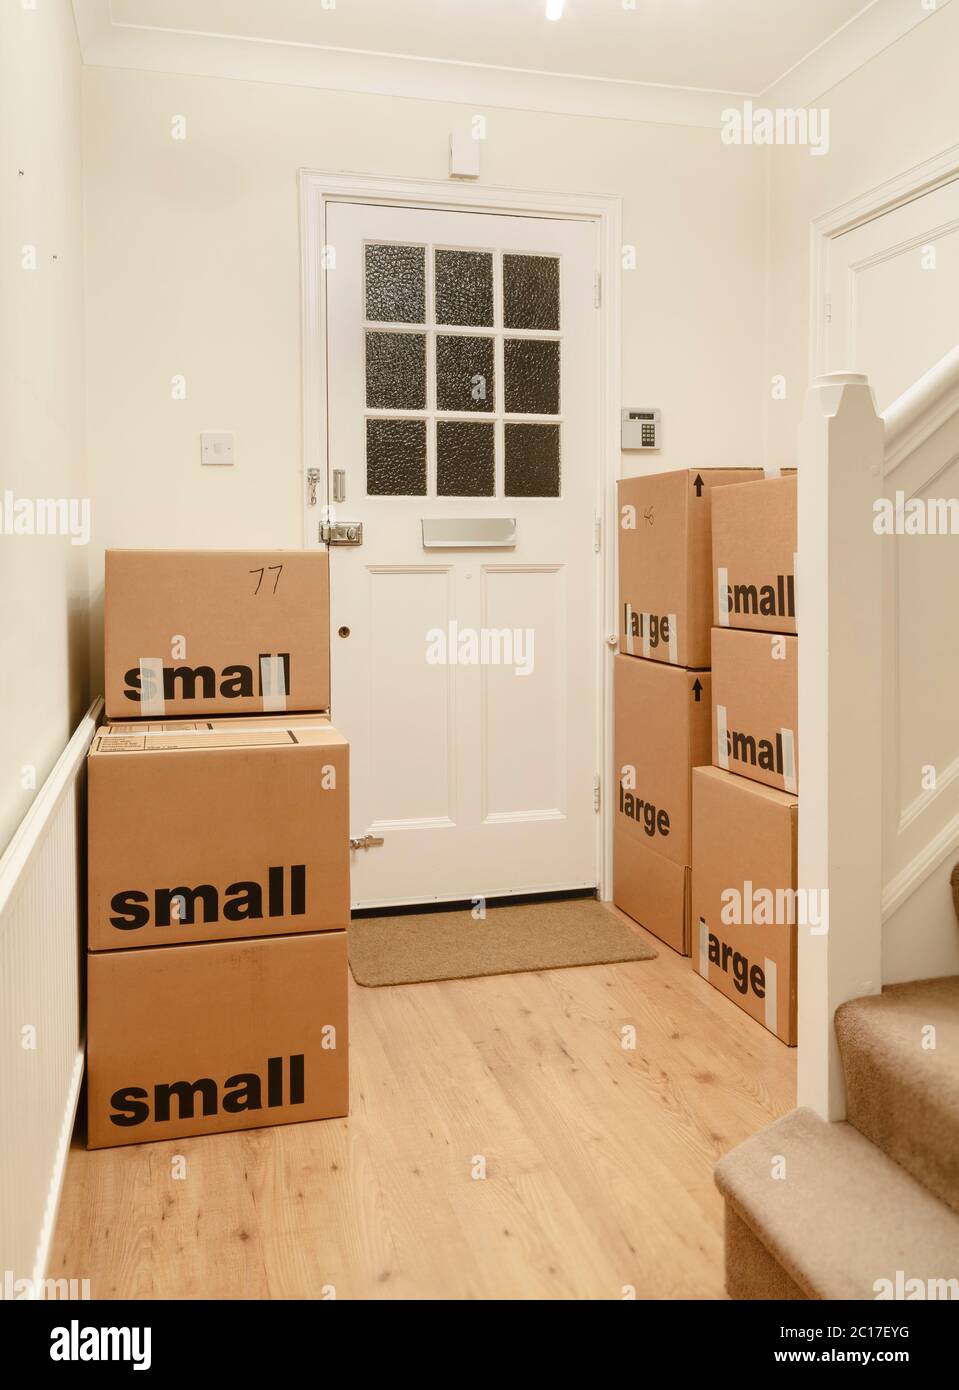 Boîtes en carton emballées et scellées empilées dans une pièce d'une maison, maison mobile, Royaume-Uni Banque D'Images